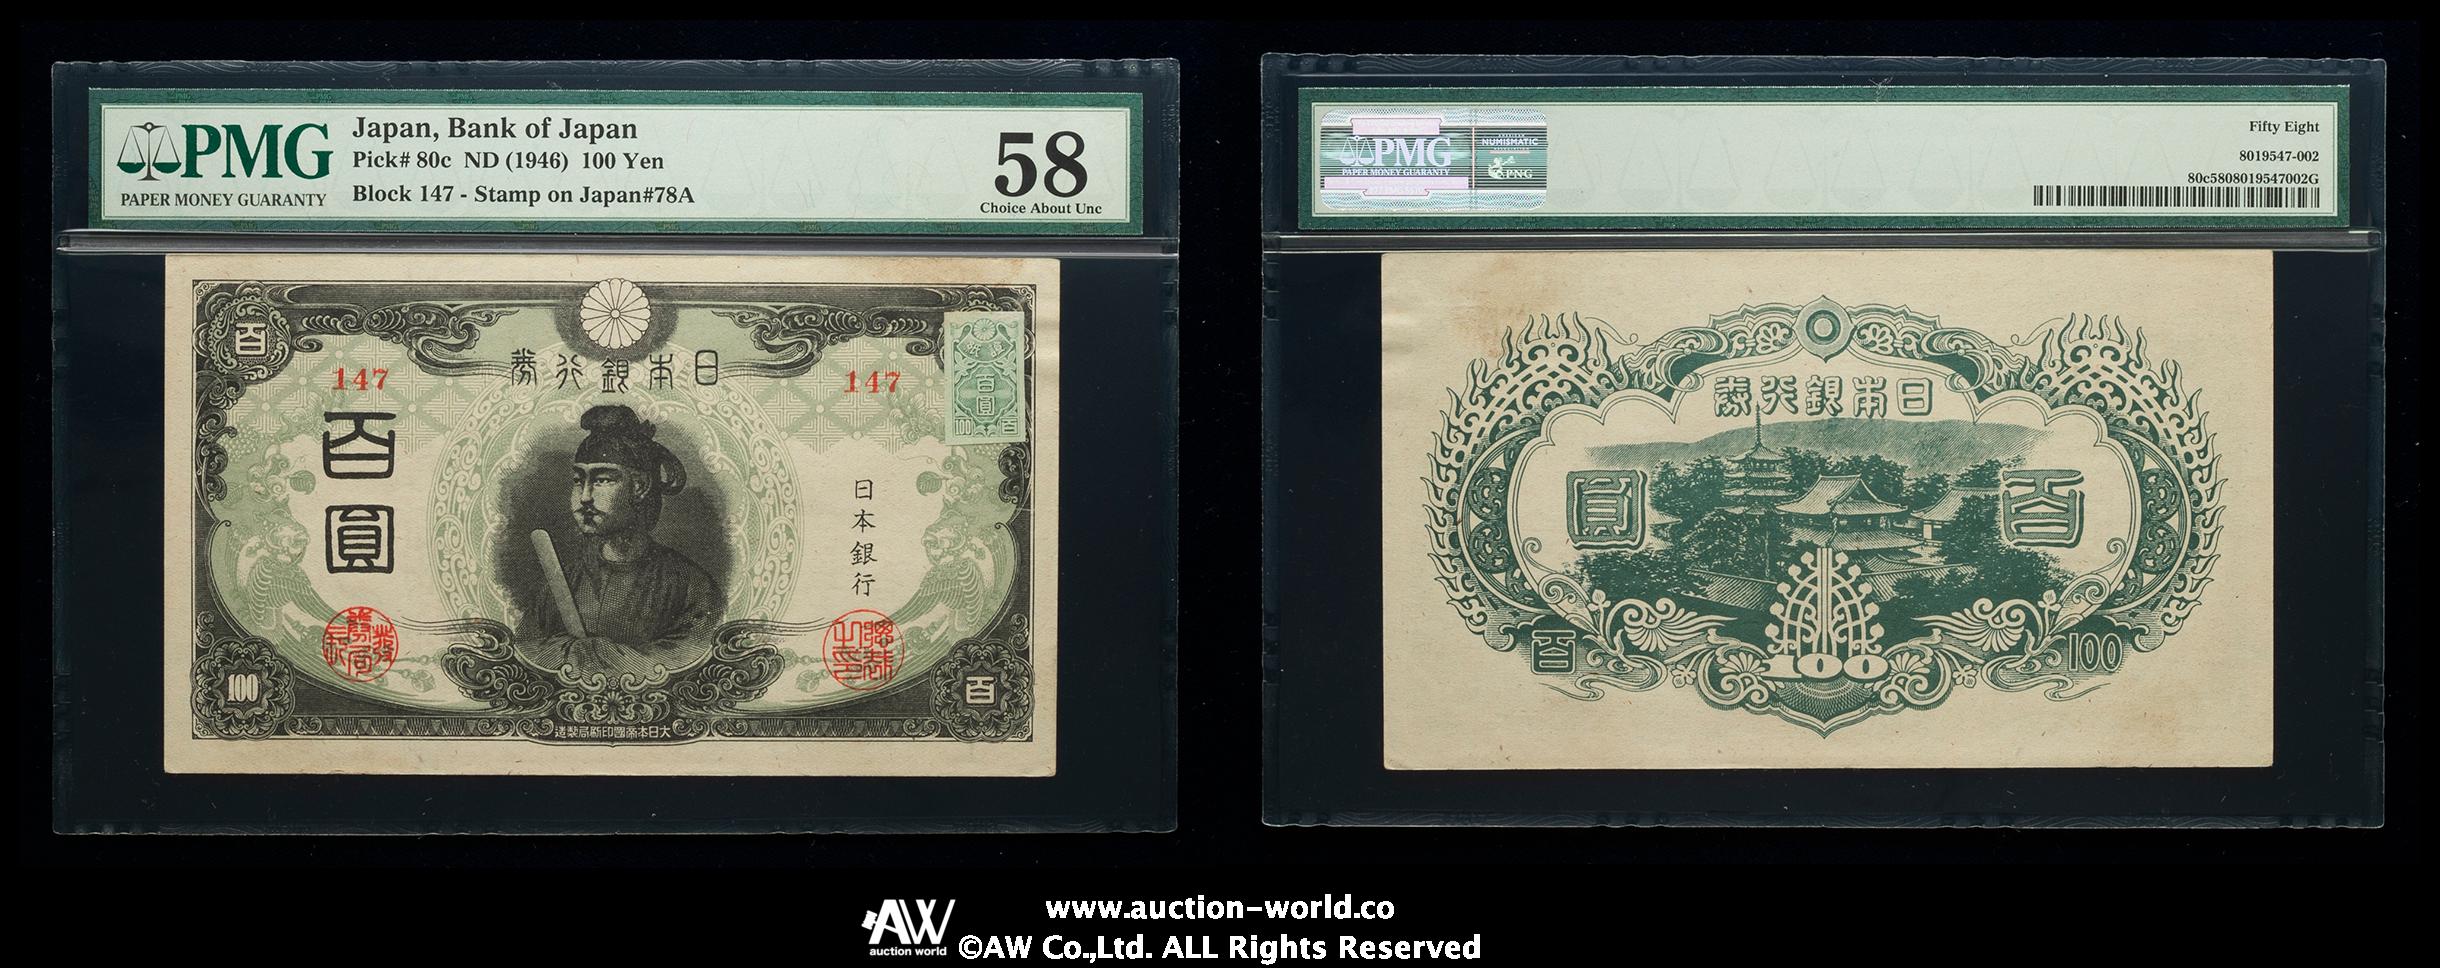 钱币博物馆| 日本3次100円札Bank of Japan 100Yen（3rd Shotoku） 昭和 